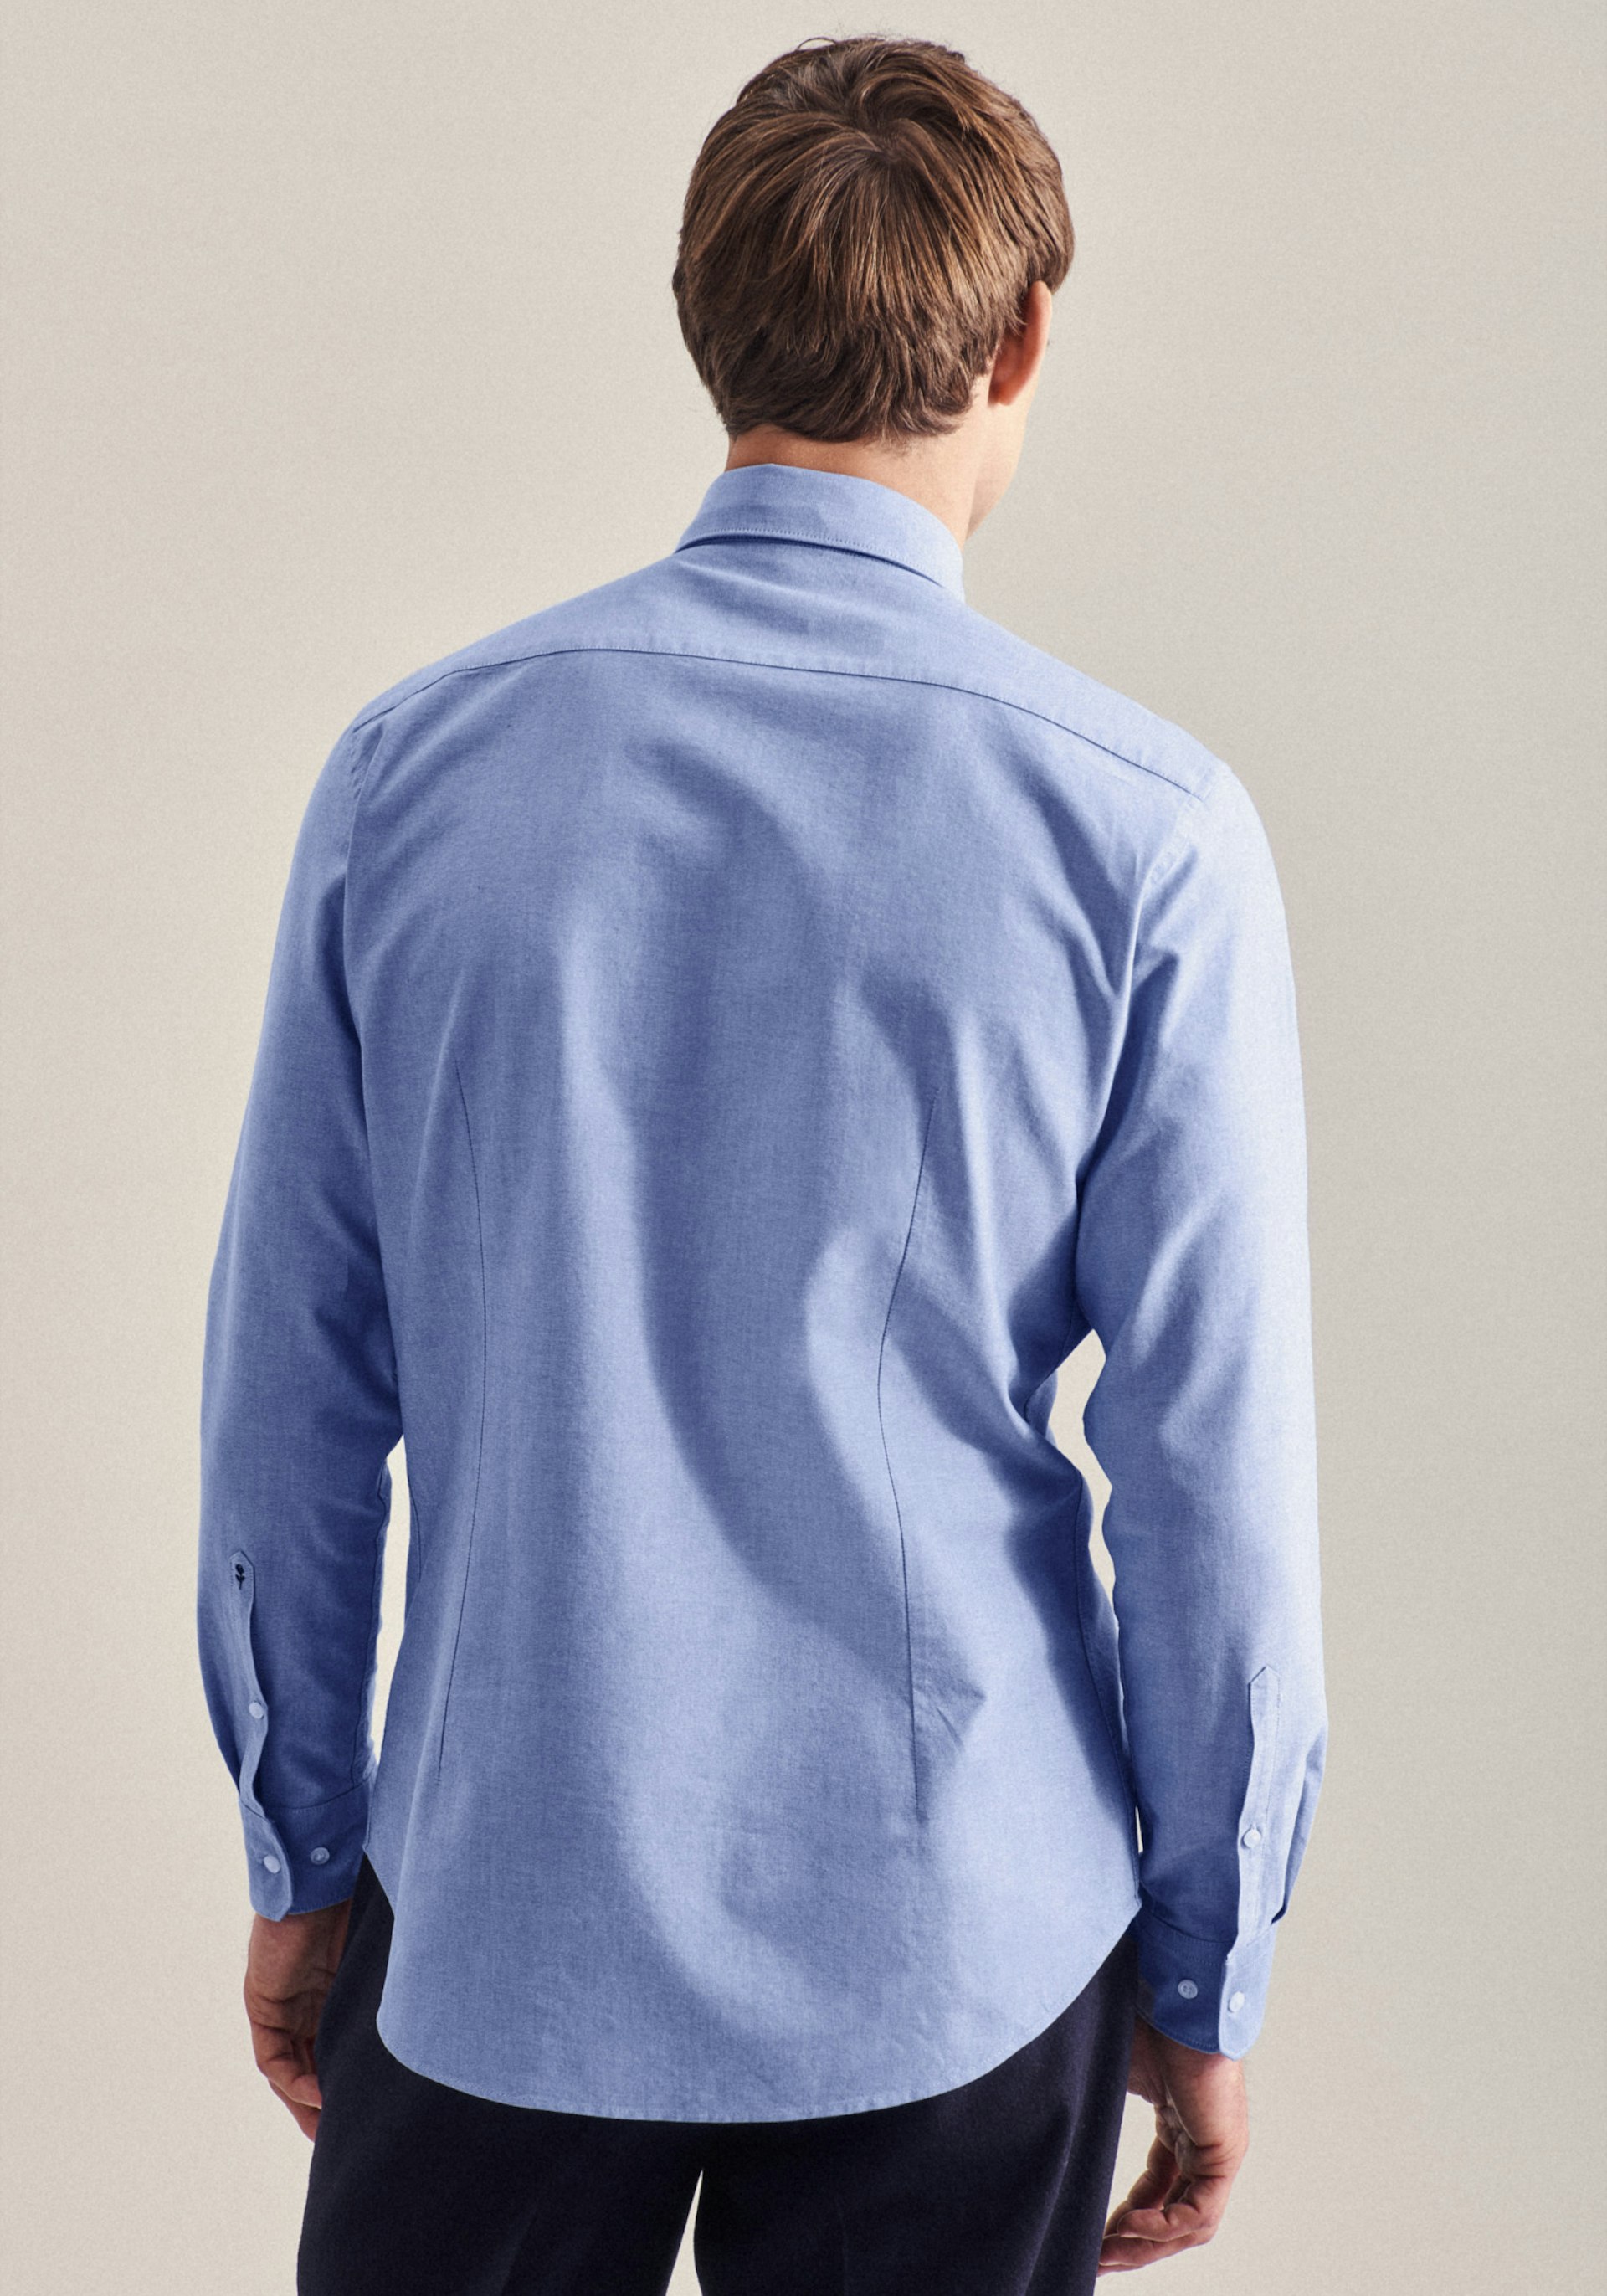 Herren Oxford Business Hemd in Shaped mit Button-Down-Kragen hellblau |  Seidensticker